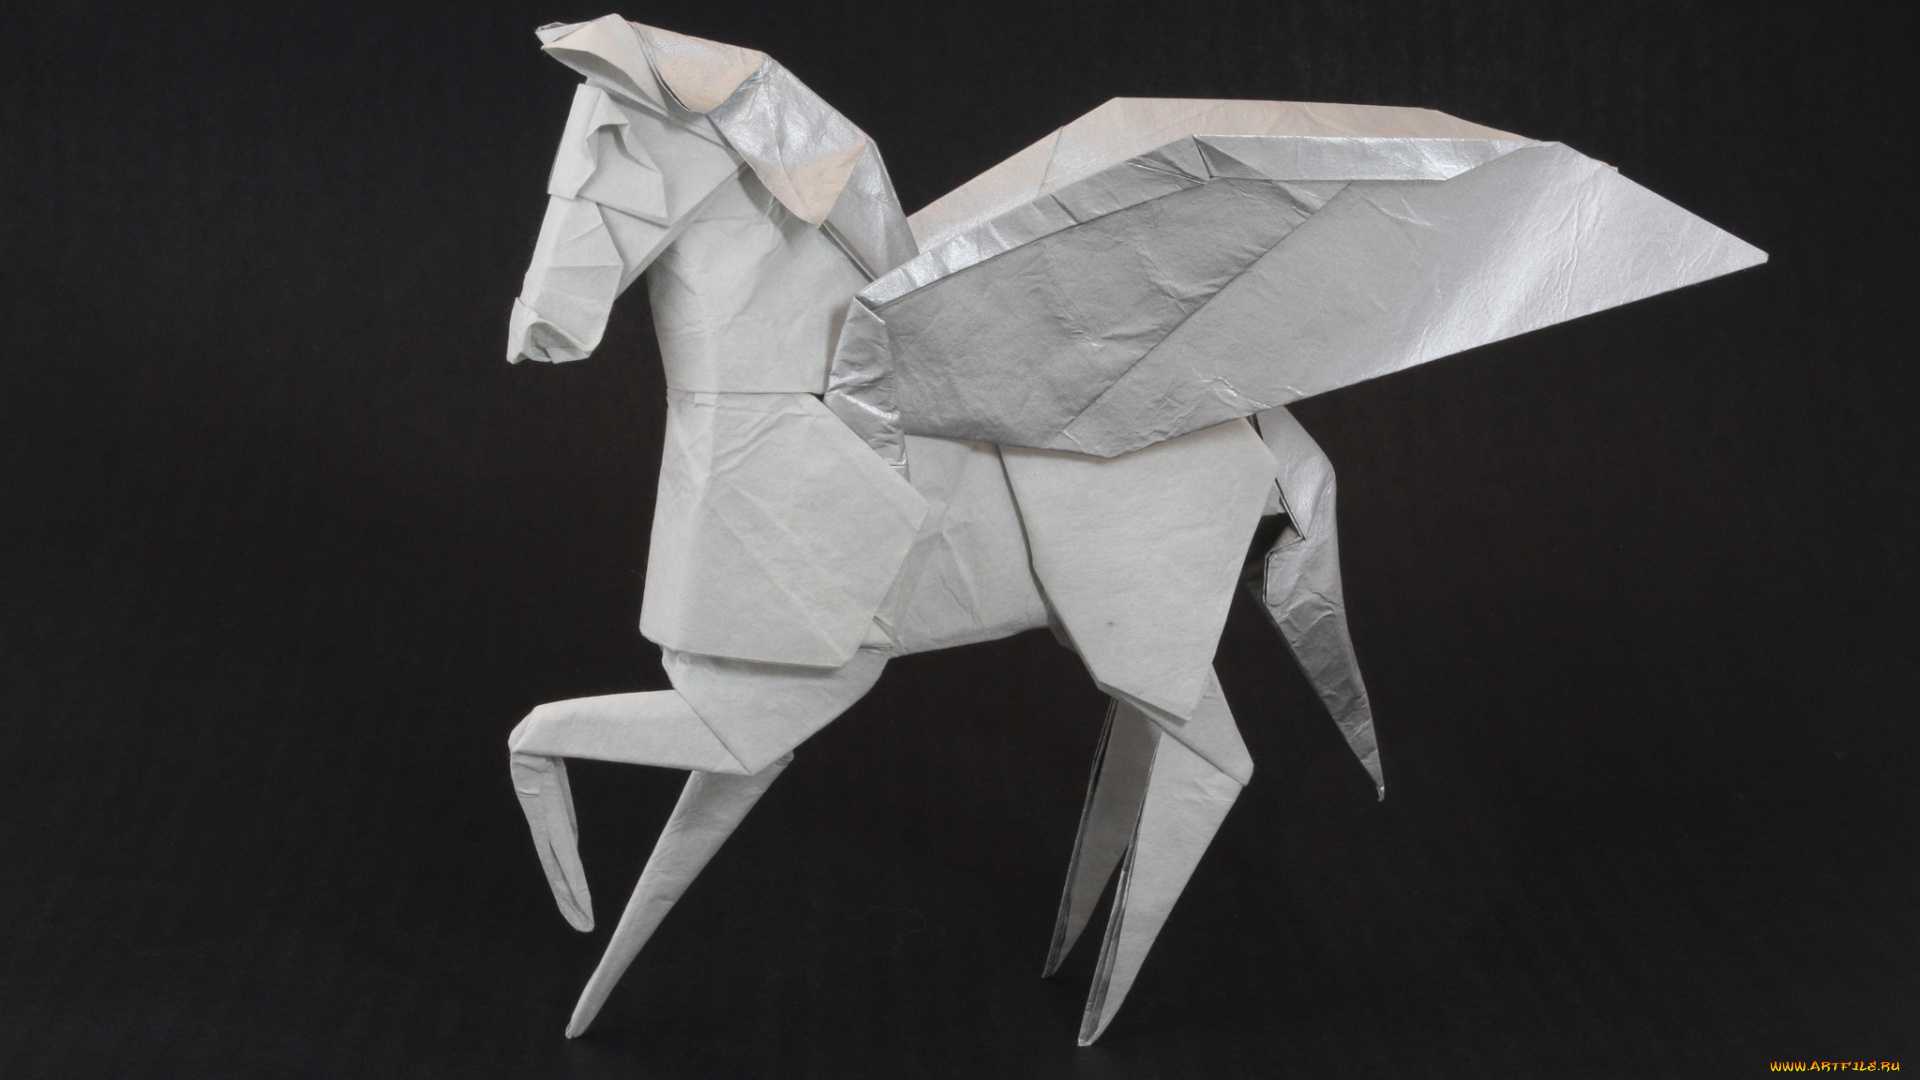 Как сделать оригами из бумаги своими руками? материалы и инструменты для занятий оригами. варианты сборки простых поделок. 90 фото шедевров из бумаги